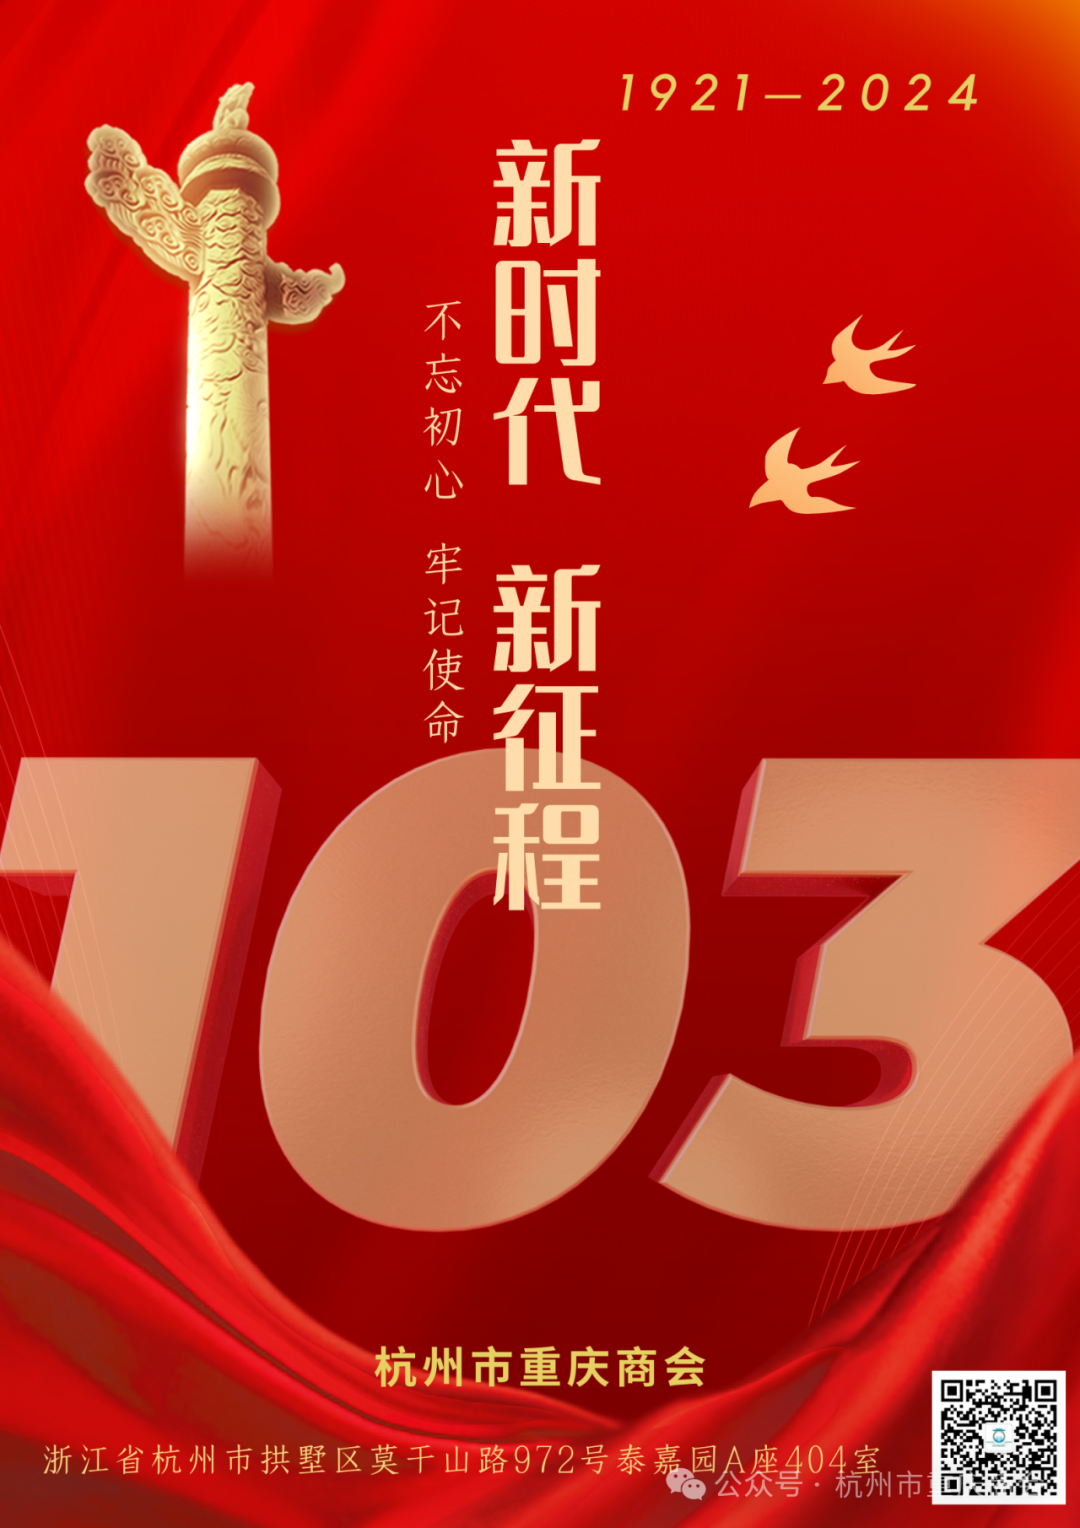 杭州市重庆商会热烈庆祝中国共产党成立103周年华诞！愿祖国繁荣昌盛！